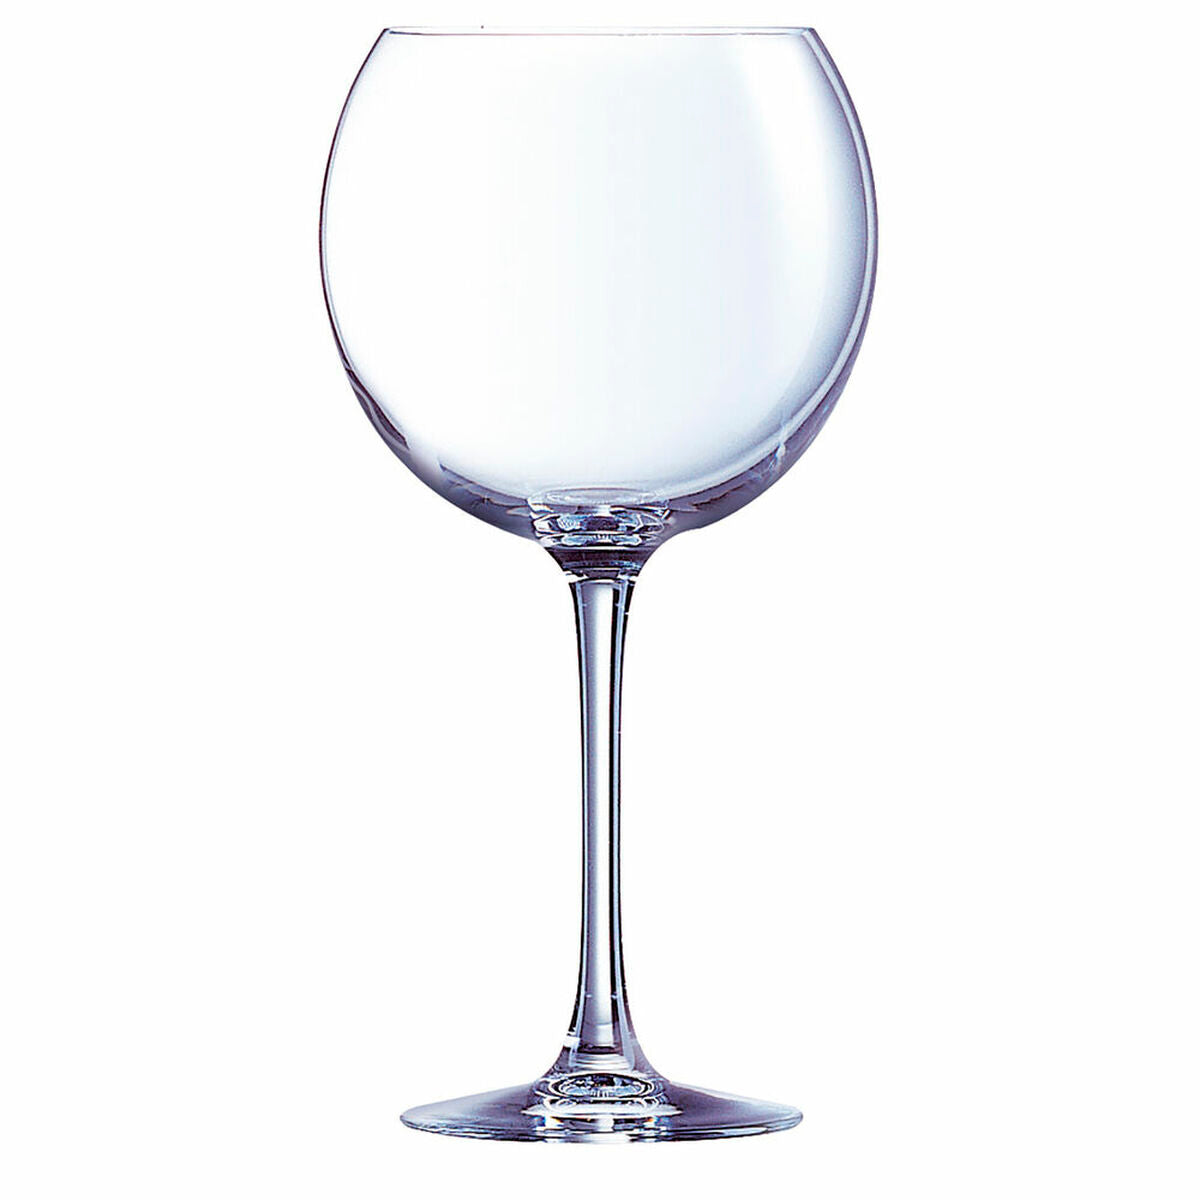 Gläsersatz Chef & Sommelier Cabernet Durchsichtig Glas 700 ml Wein (6 Stück)